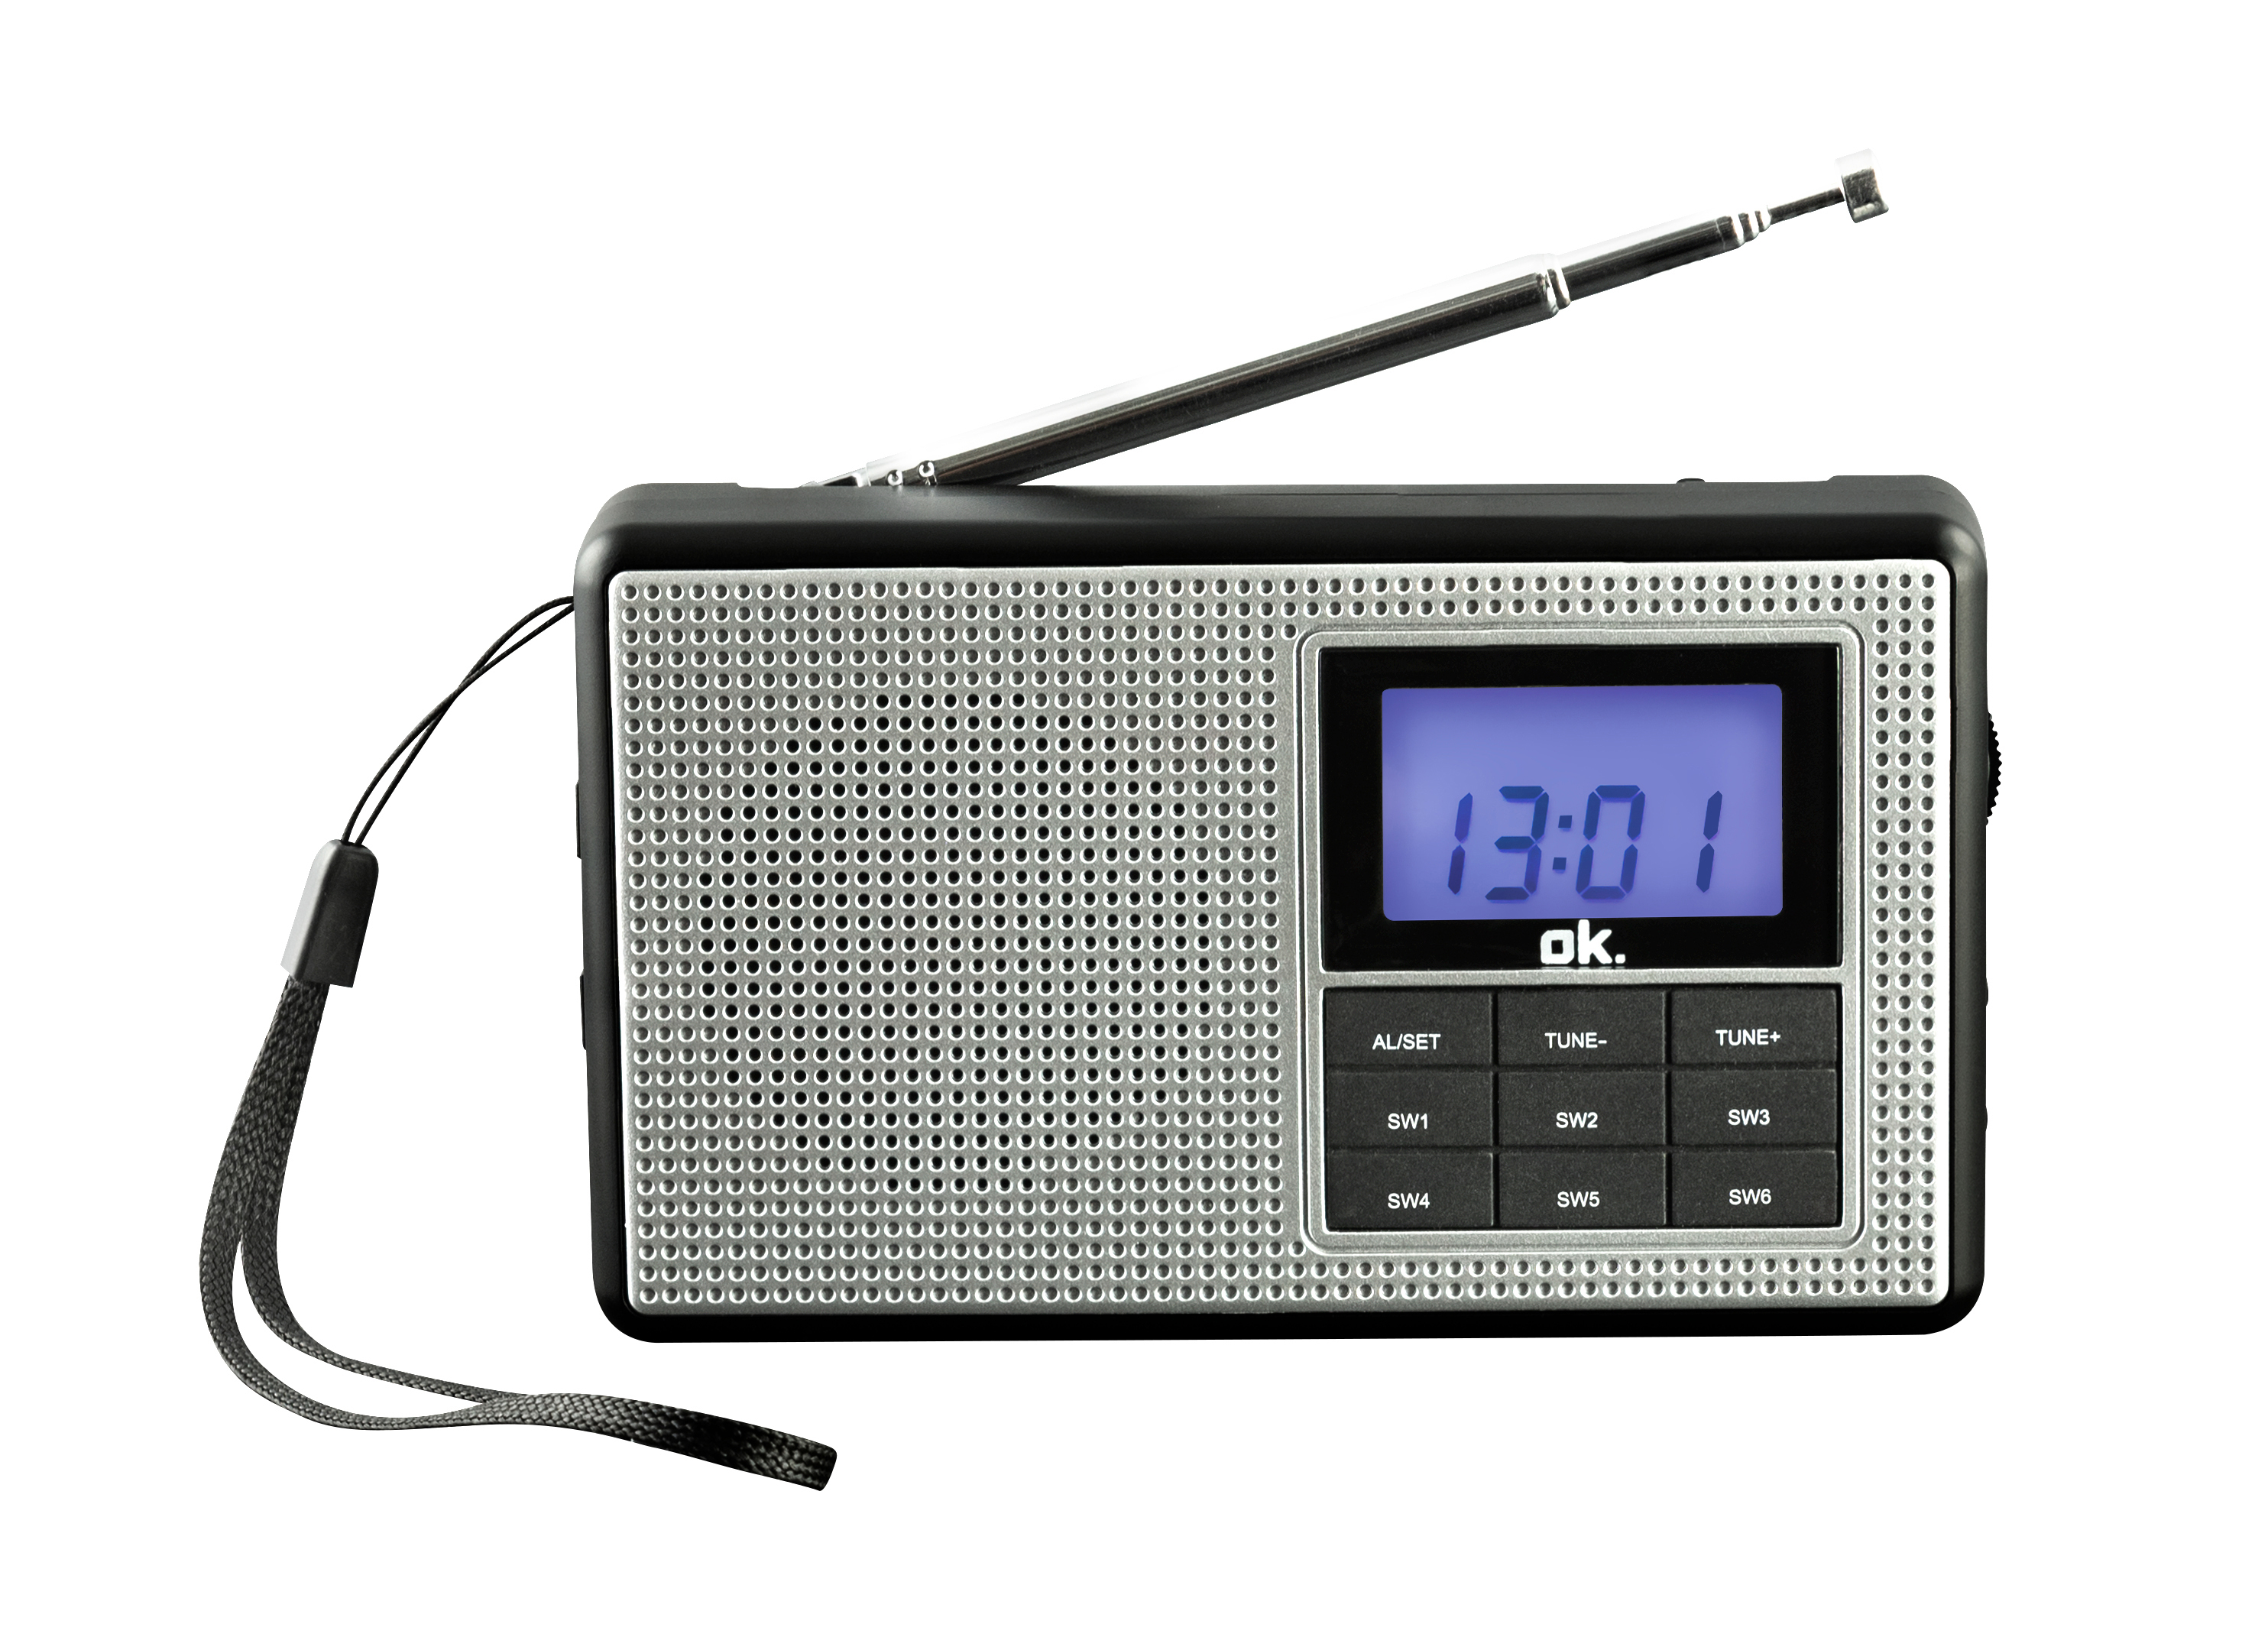 OK. ORF 230 Tragbares Taschenradio, Silber/Schwarz SW, KW, FM, AM, FM, AM